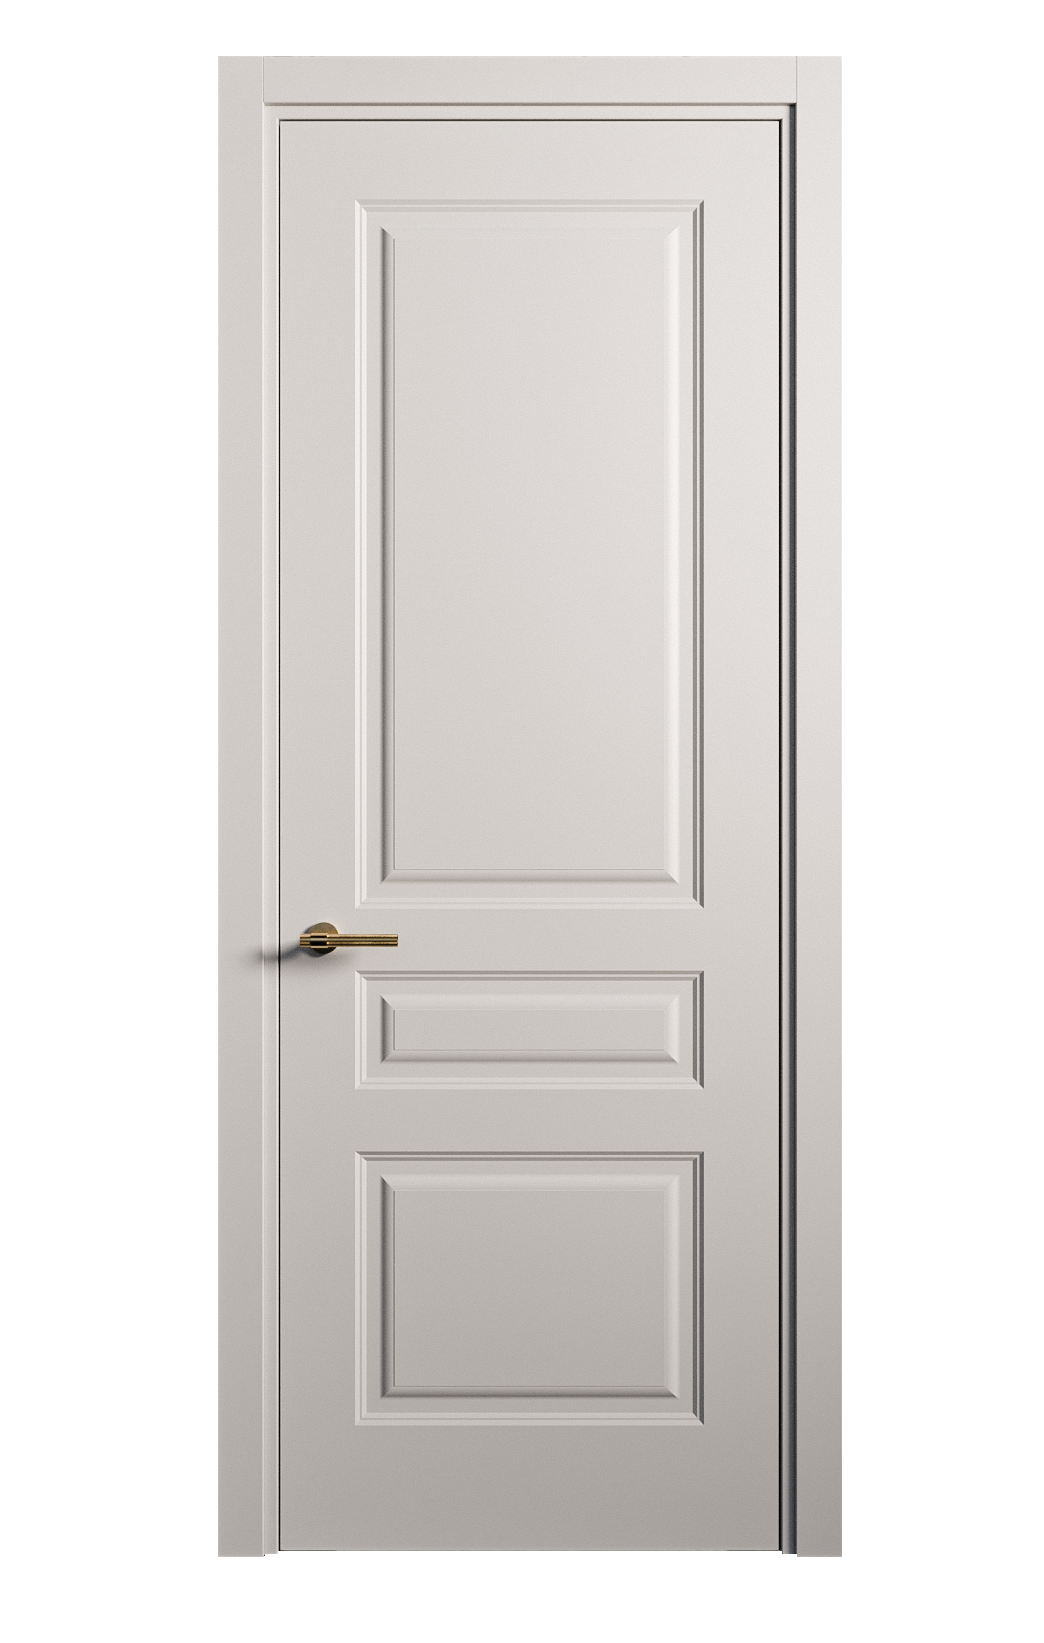 Межкомнатная дверь Вита-2 глухая эмаль ral 7047 26362